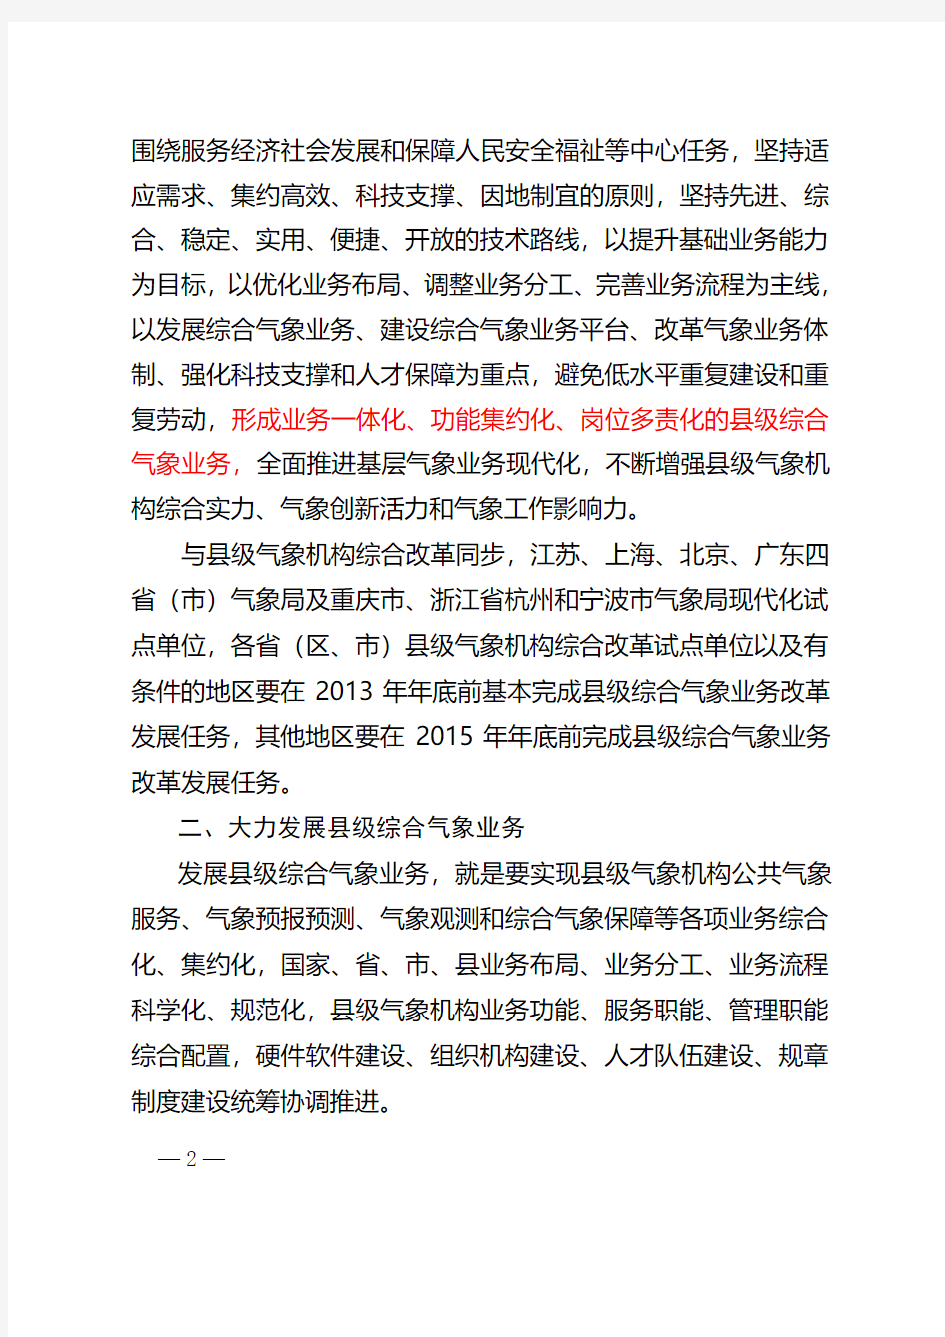 关于县级综合气象业务改革发展的意见气发〔2013〕54号文[1]